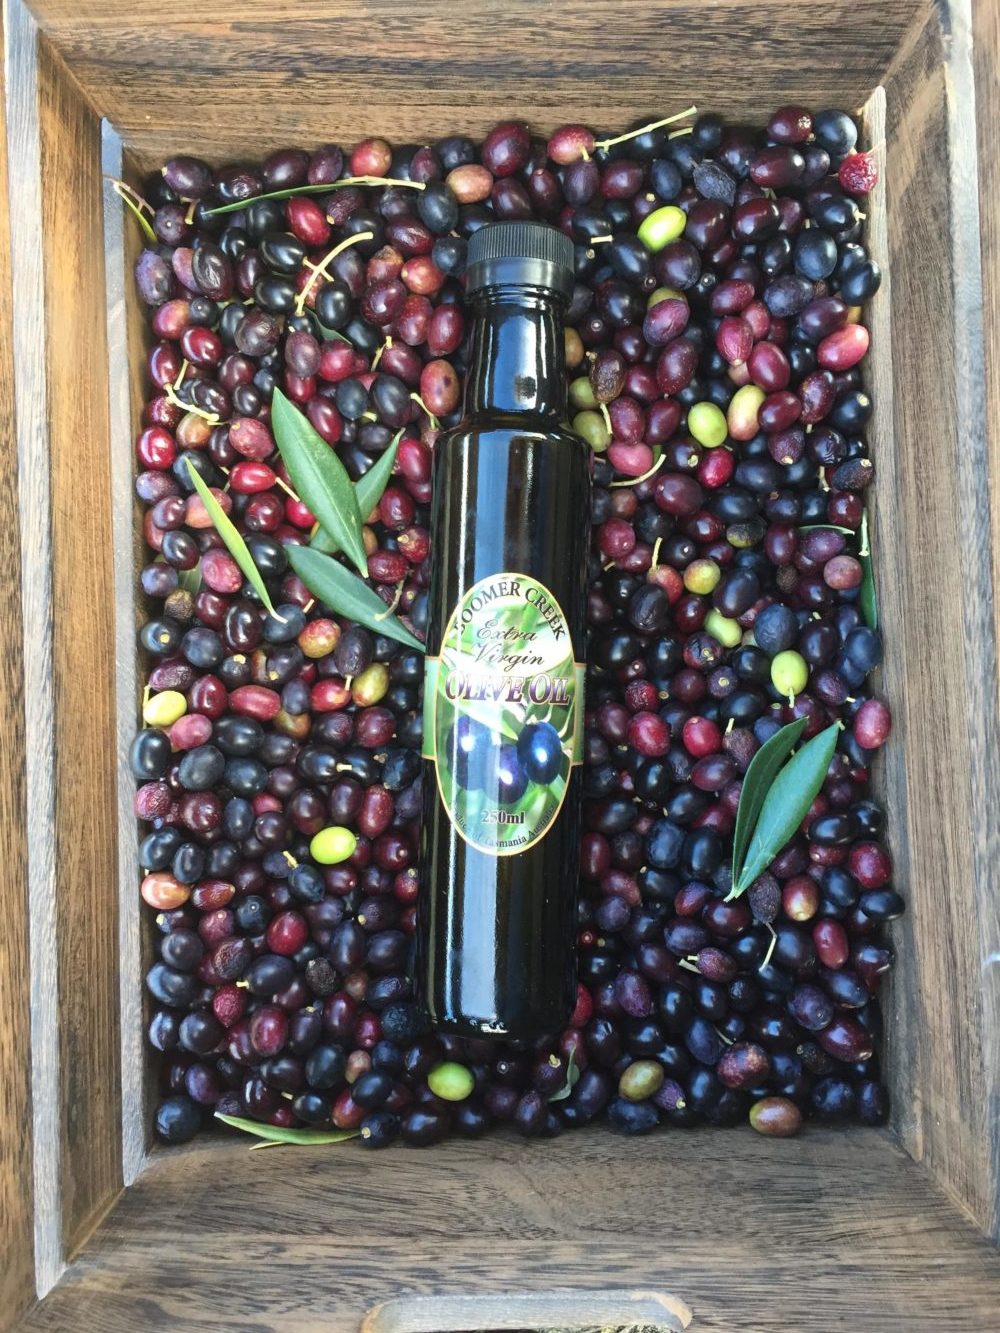 Boomer Creek Olive Oil - 250ml or 500ml